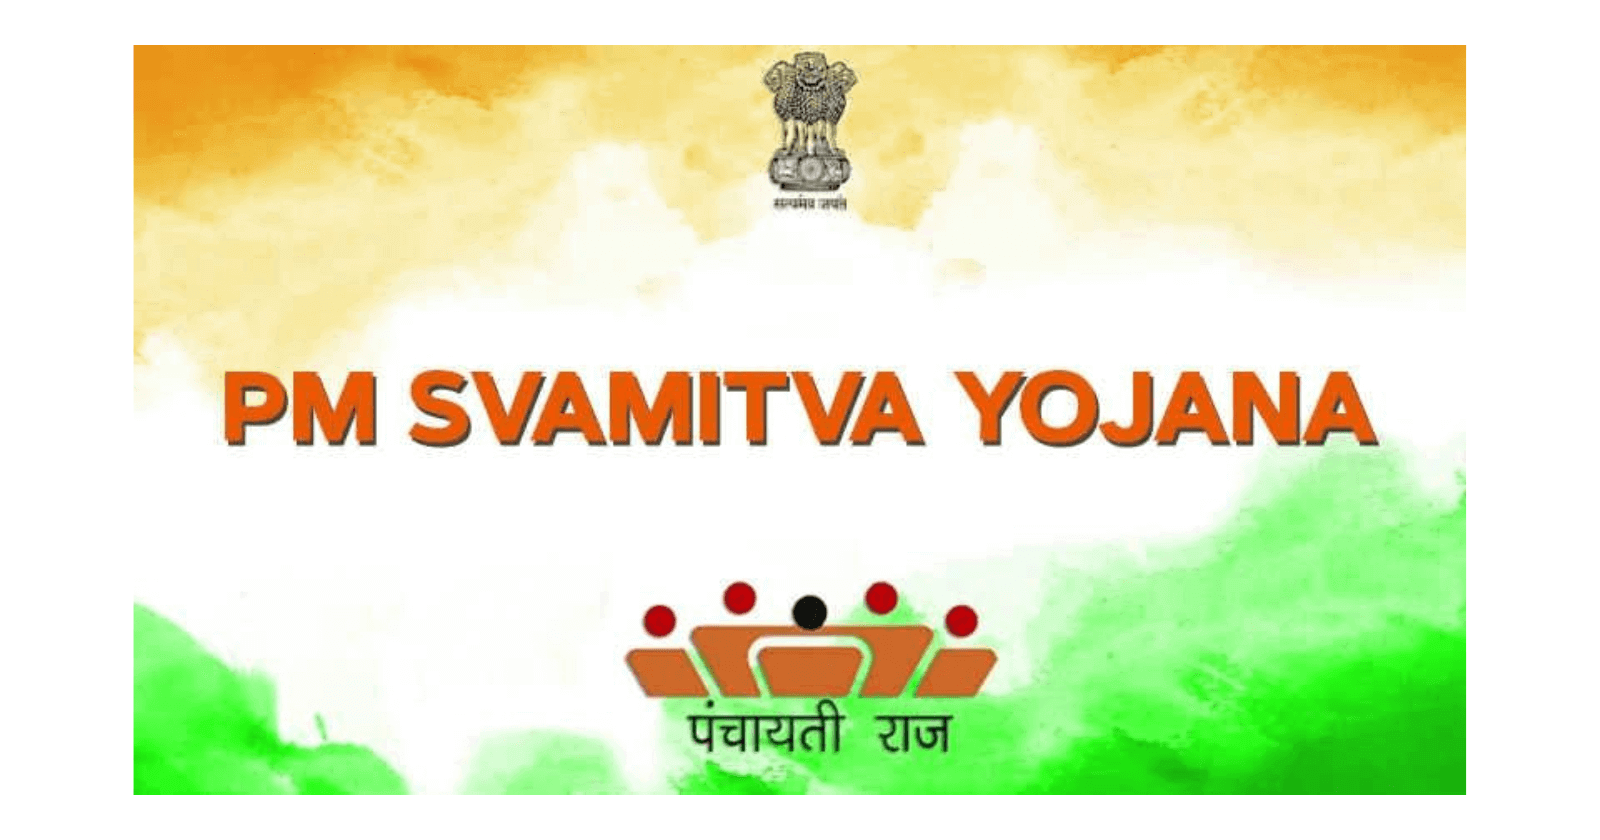 All About SVAMITVA Scheme: Empowering Rural India